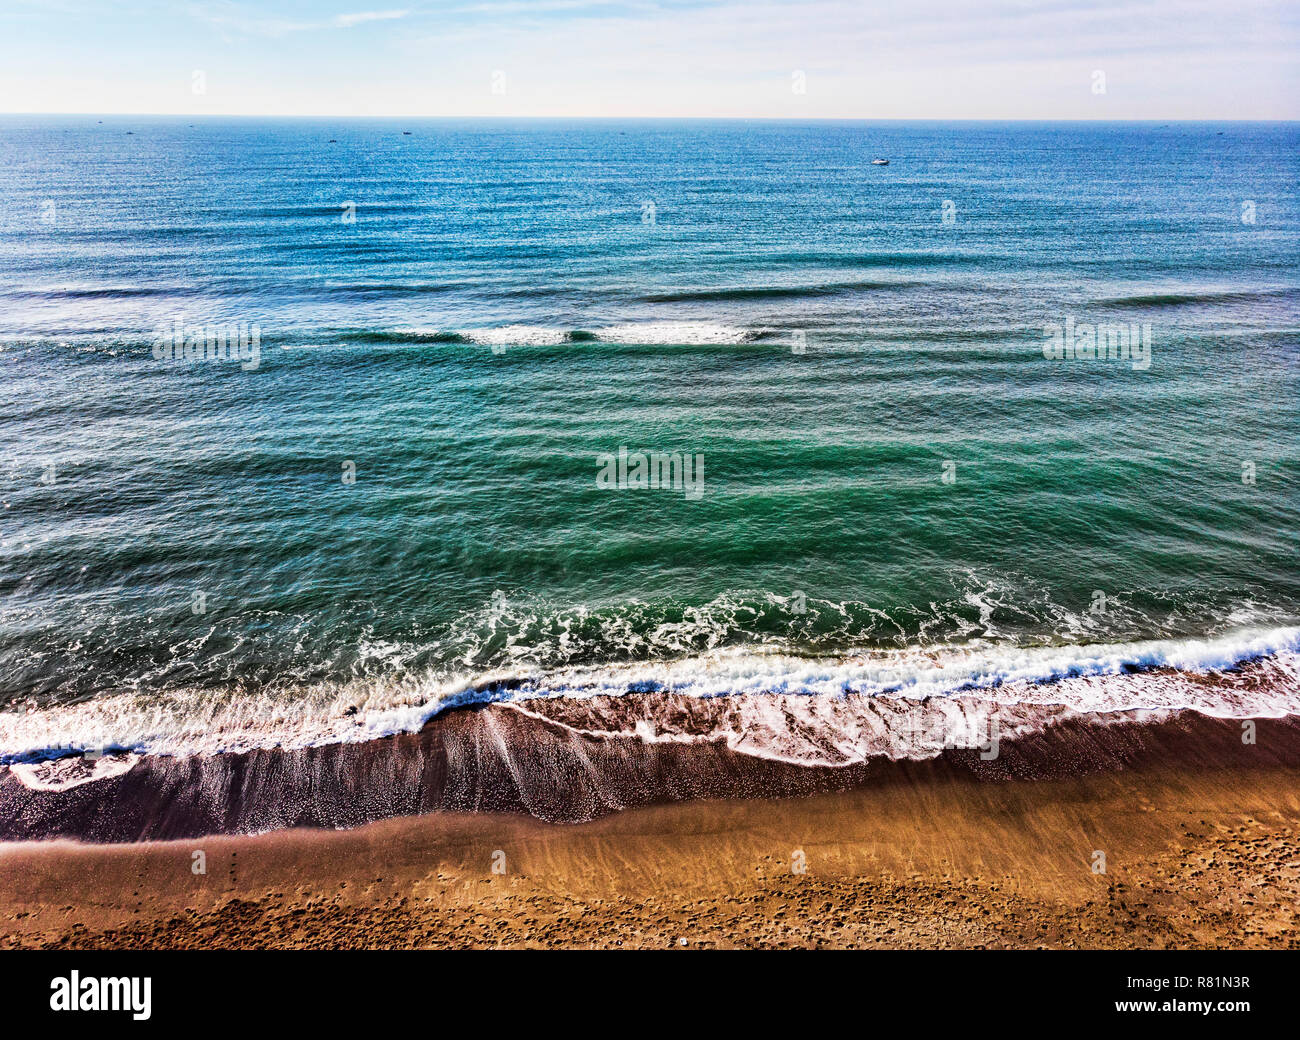 Vue aérienne de la plage et d'un océan bleu et calme avec de nombreux bateaux dans la distance Banque D'Images